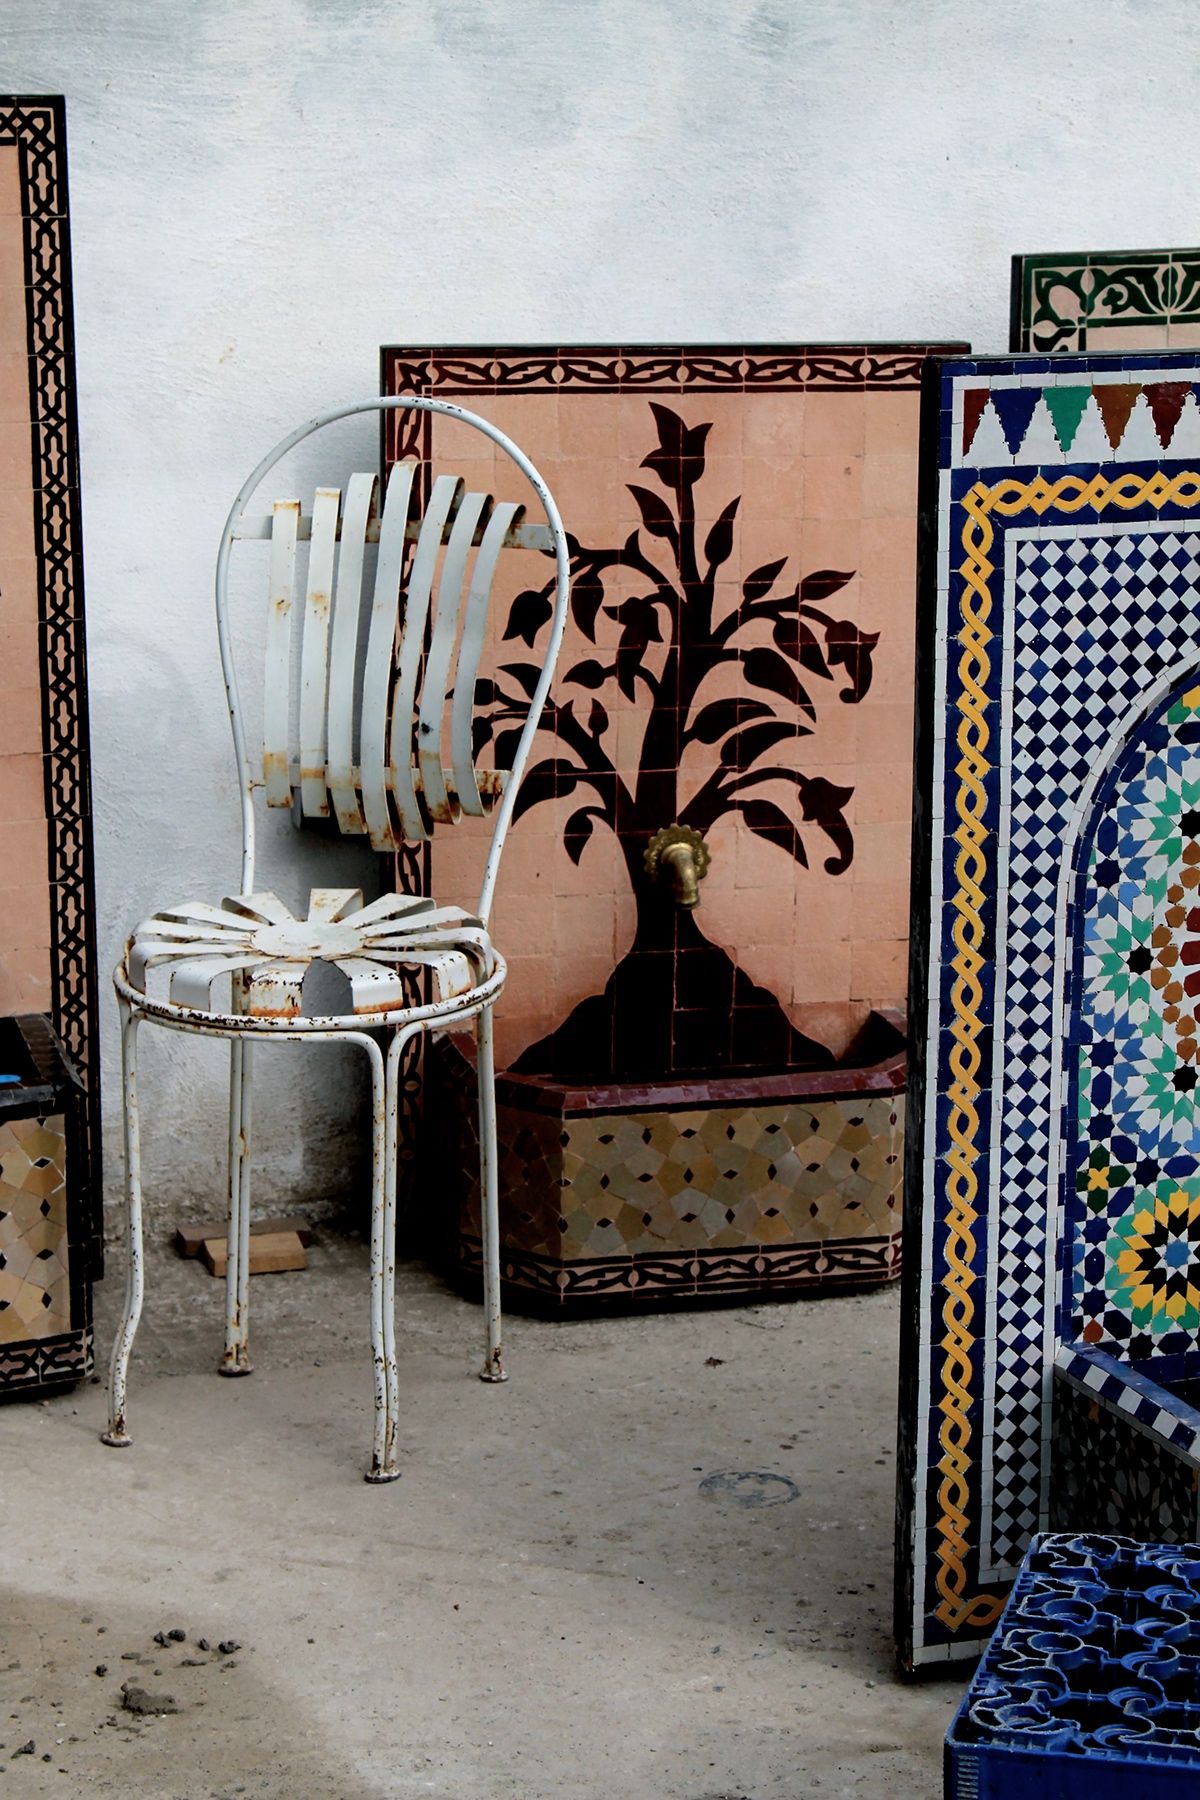 Maroc desert Photographie chefchaouen Marrakech